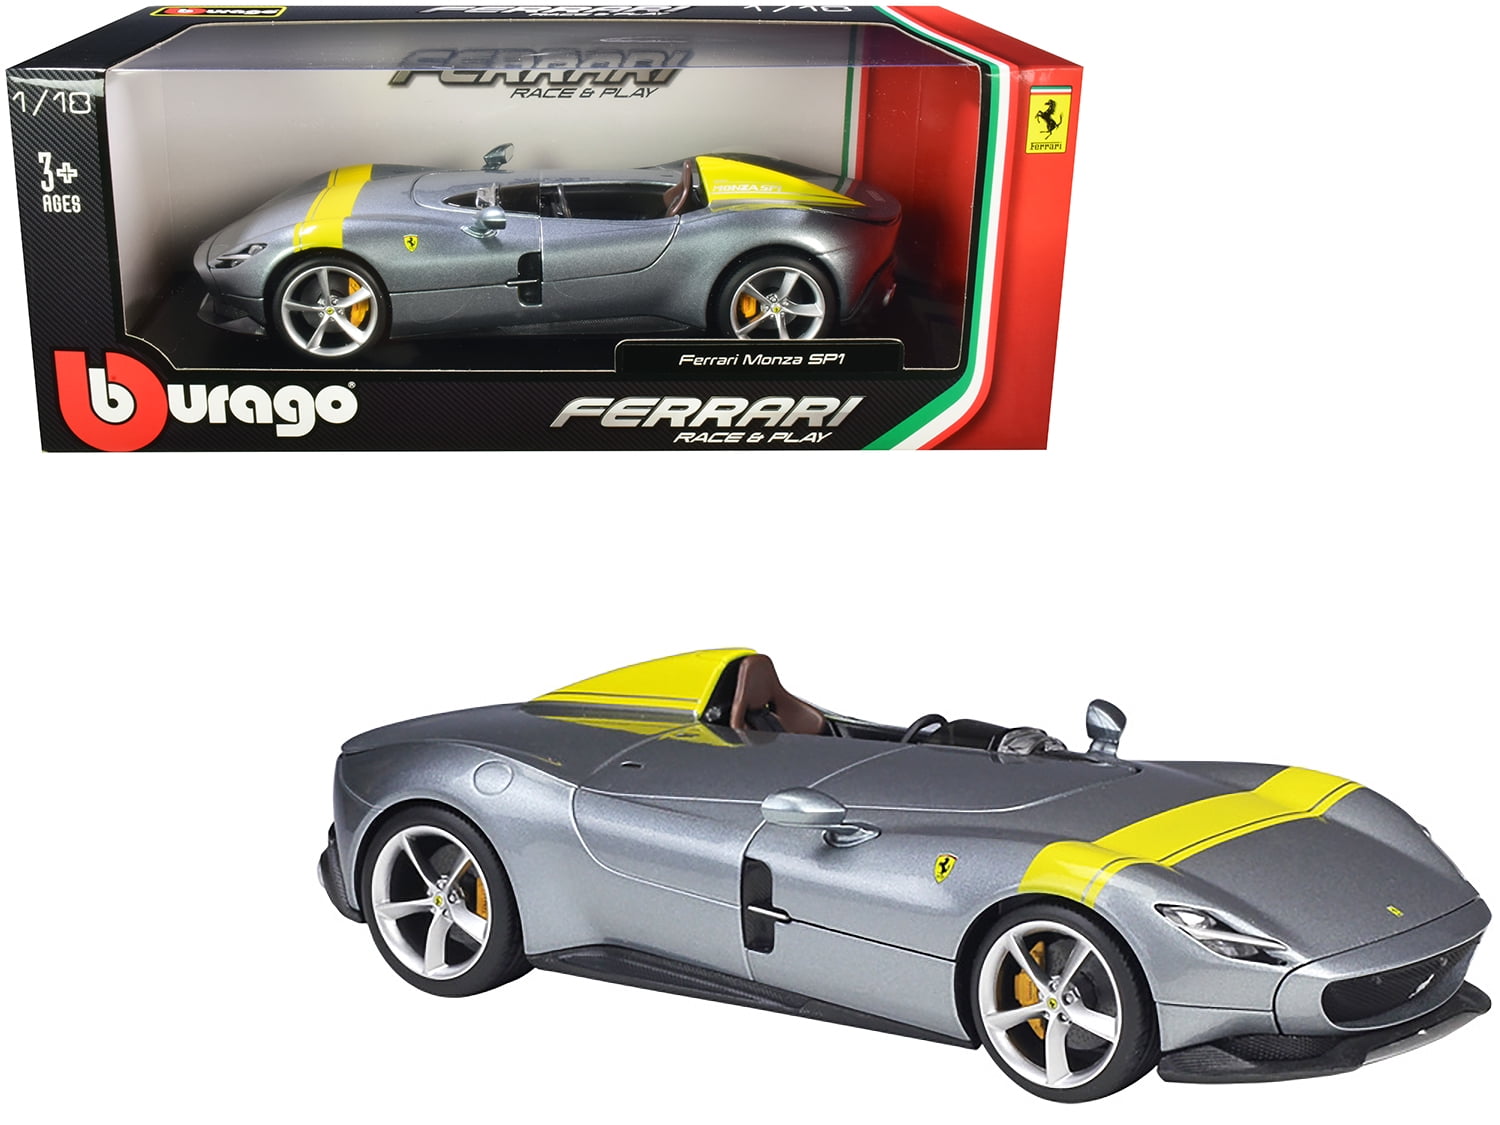 NEW MAISTO 1:18 Scale Diecast Model Car Ferrari Monza SP1 Silver